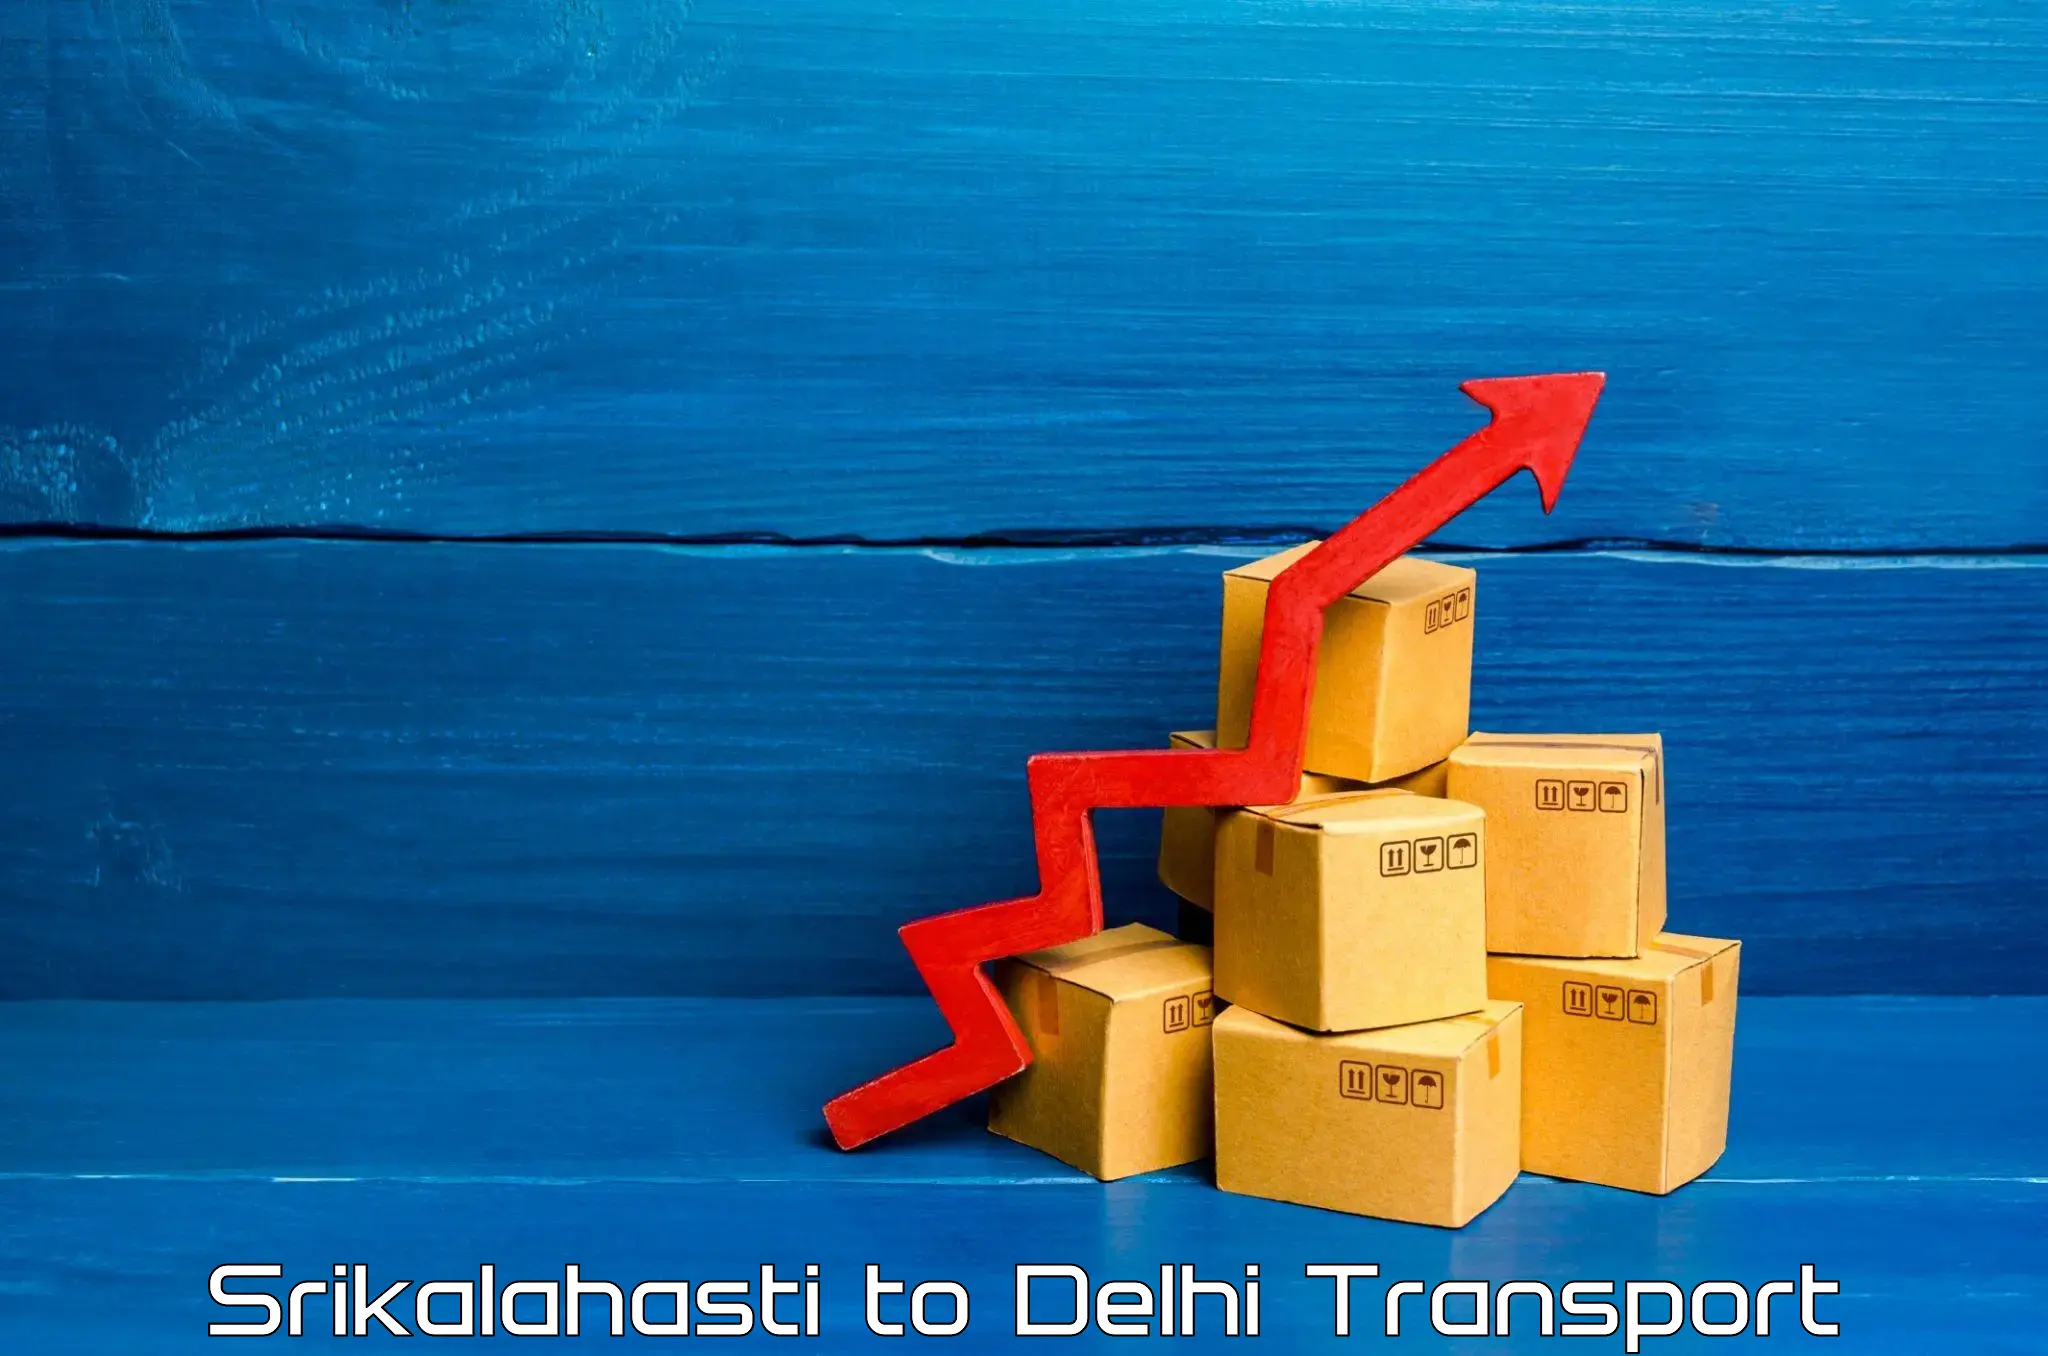 Cargo transport services Srikalahasti to Jamia Millia Islamia New Delhi